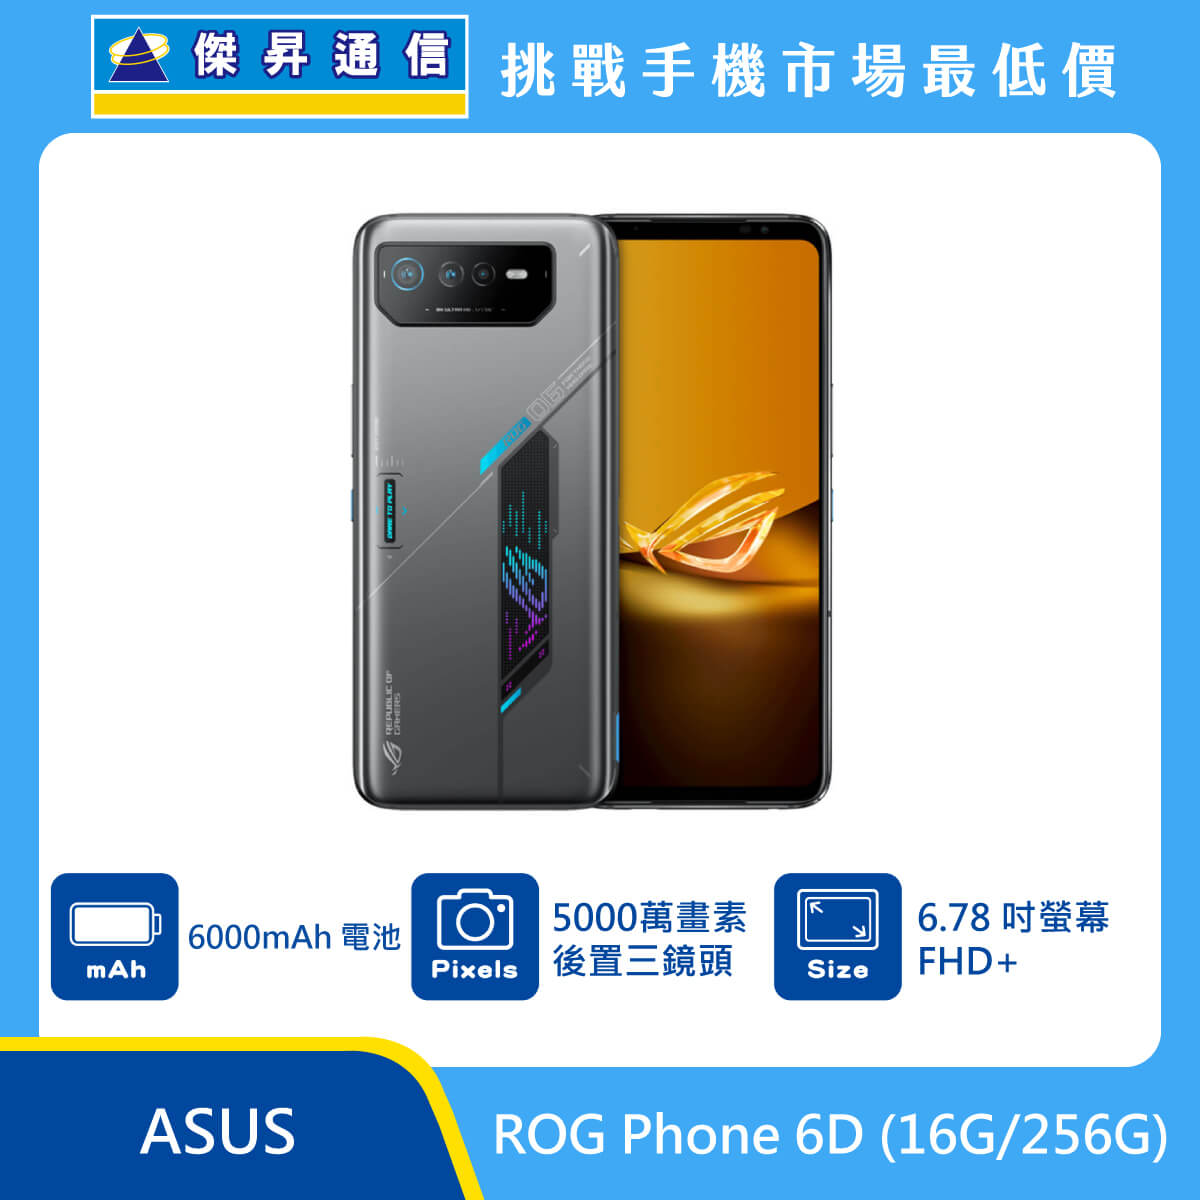 ASUS ROG Phone 6D (16G/256G)